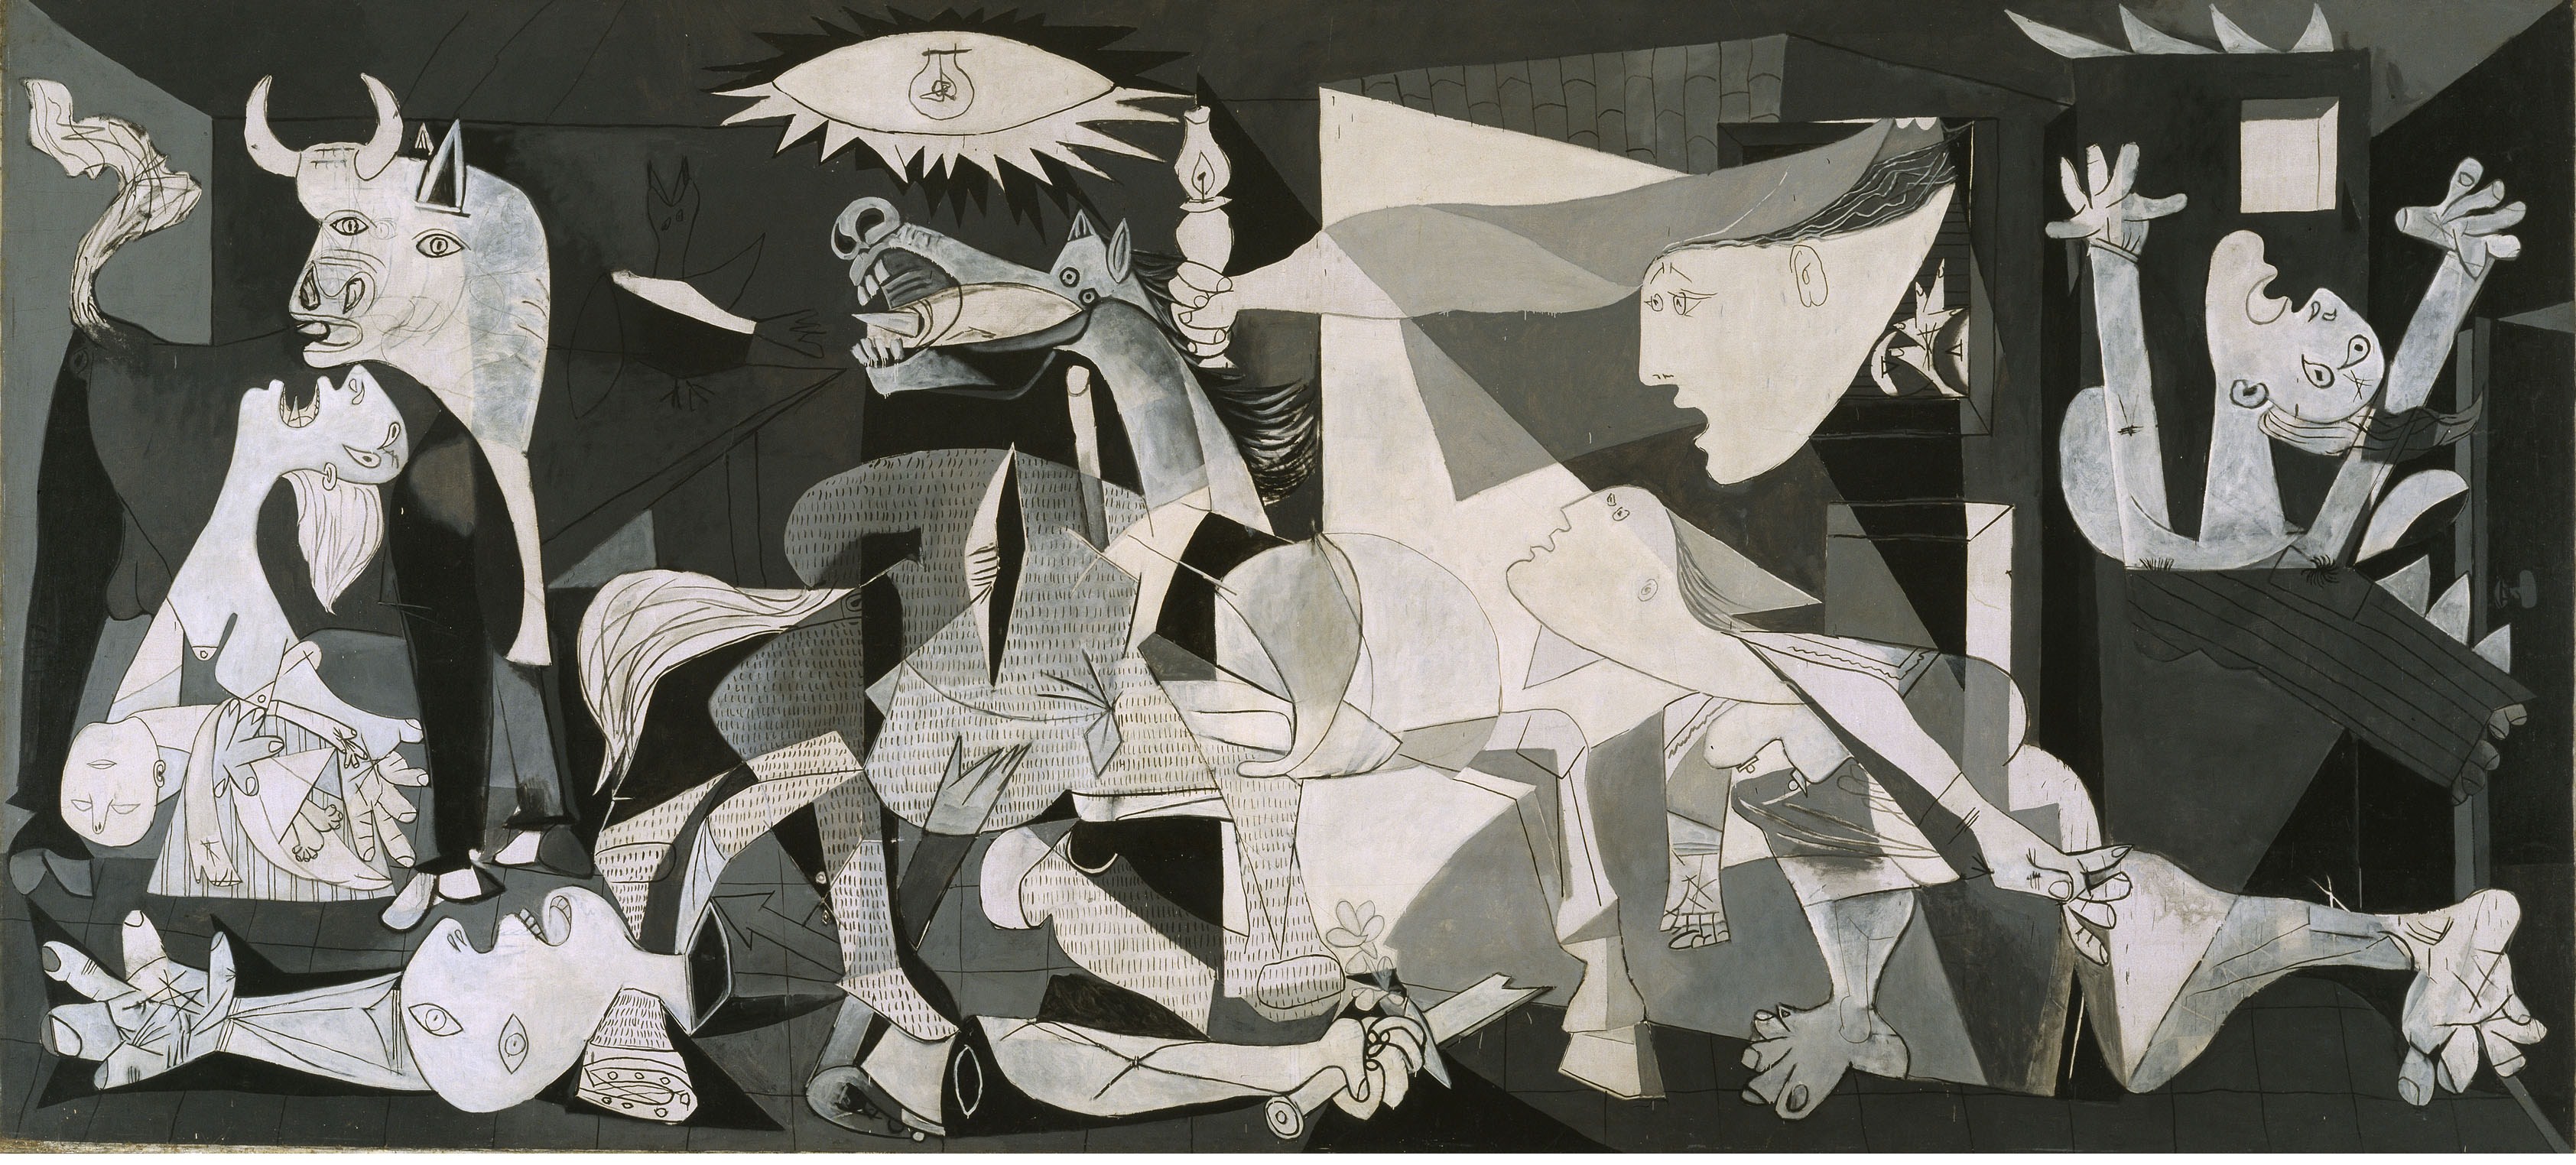 Pablo Picasso Cubism Classic Art Guernica 3369x1524